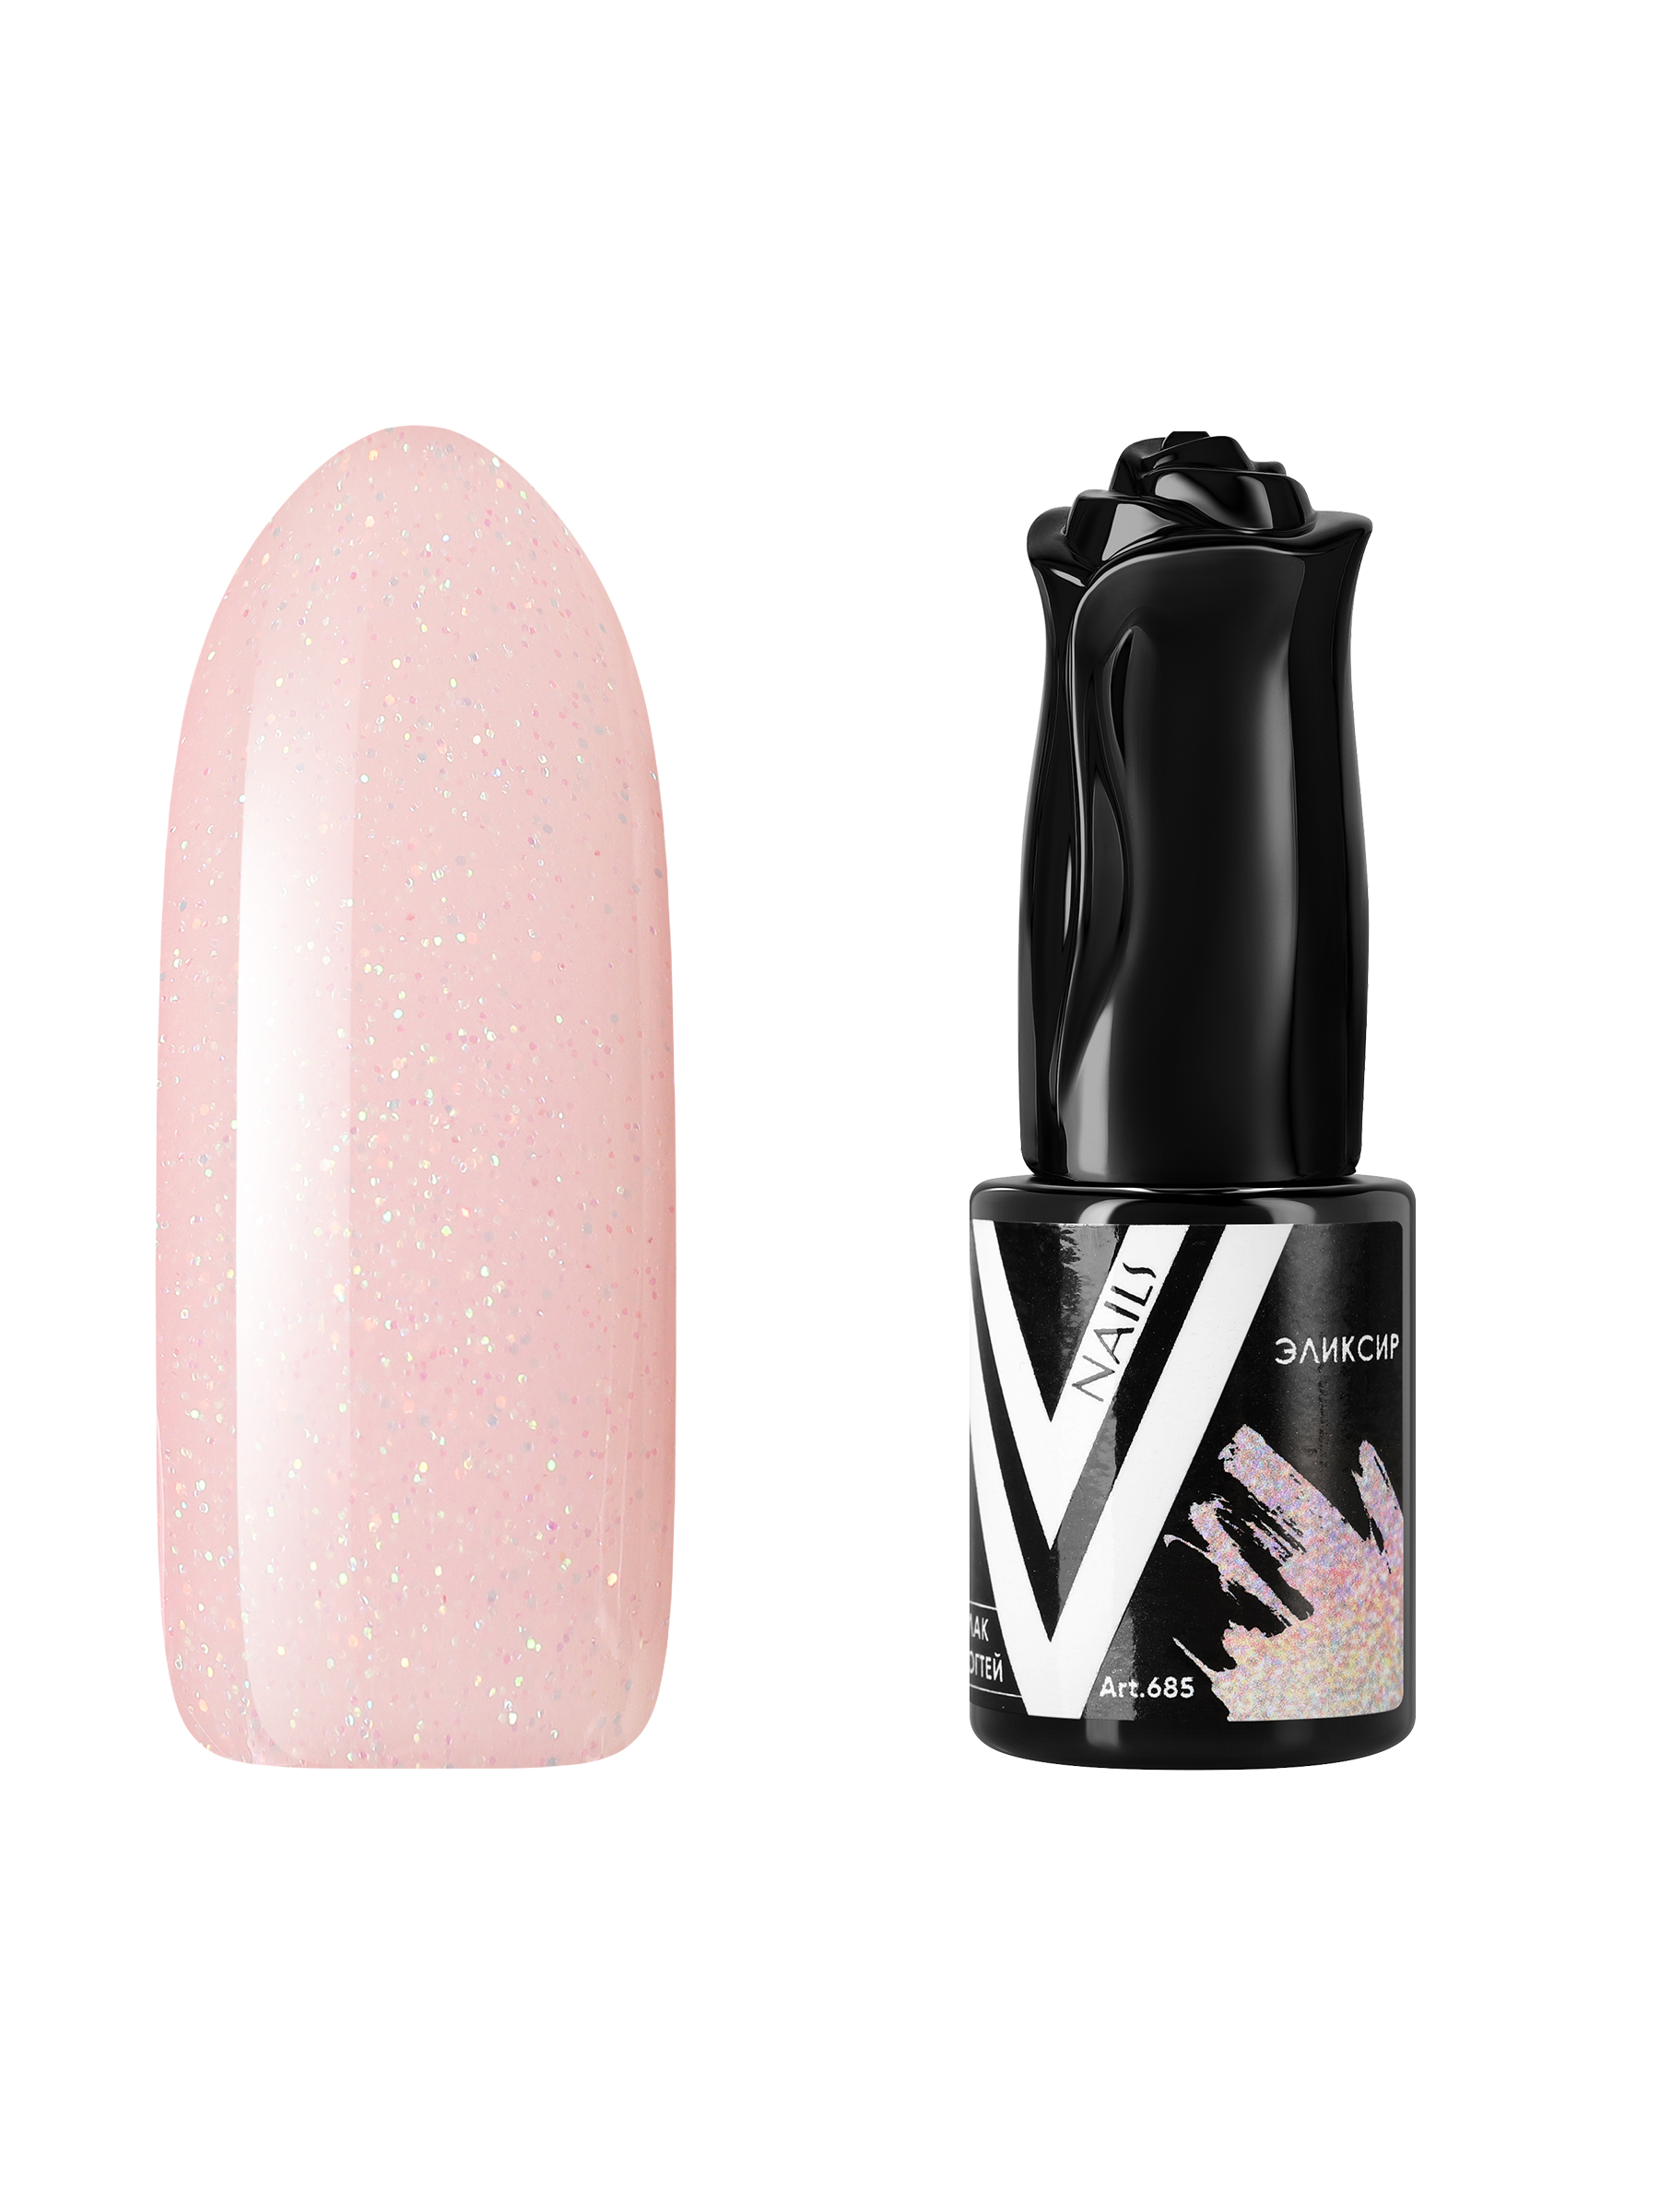 Гель-лак для ногтей с блестками Vogue Nails полупрозрачный, светлый, бежевый, 10 мл пудра artdeco запасной блок 05 бежевый светлый